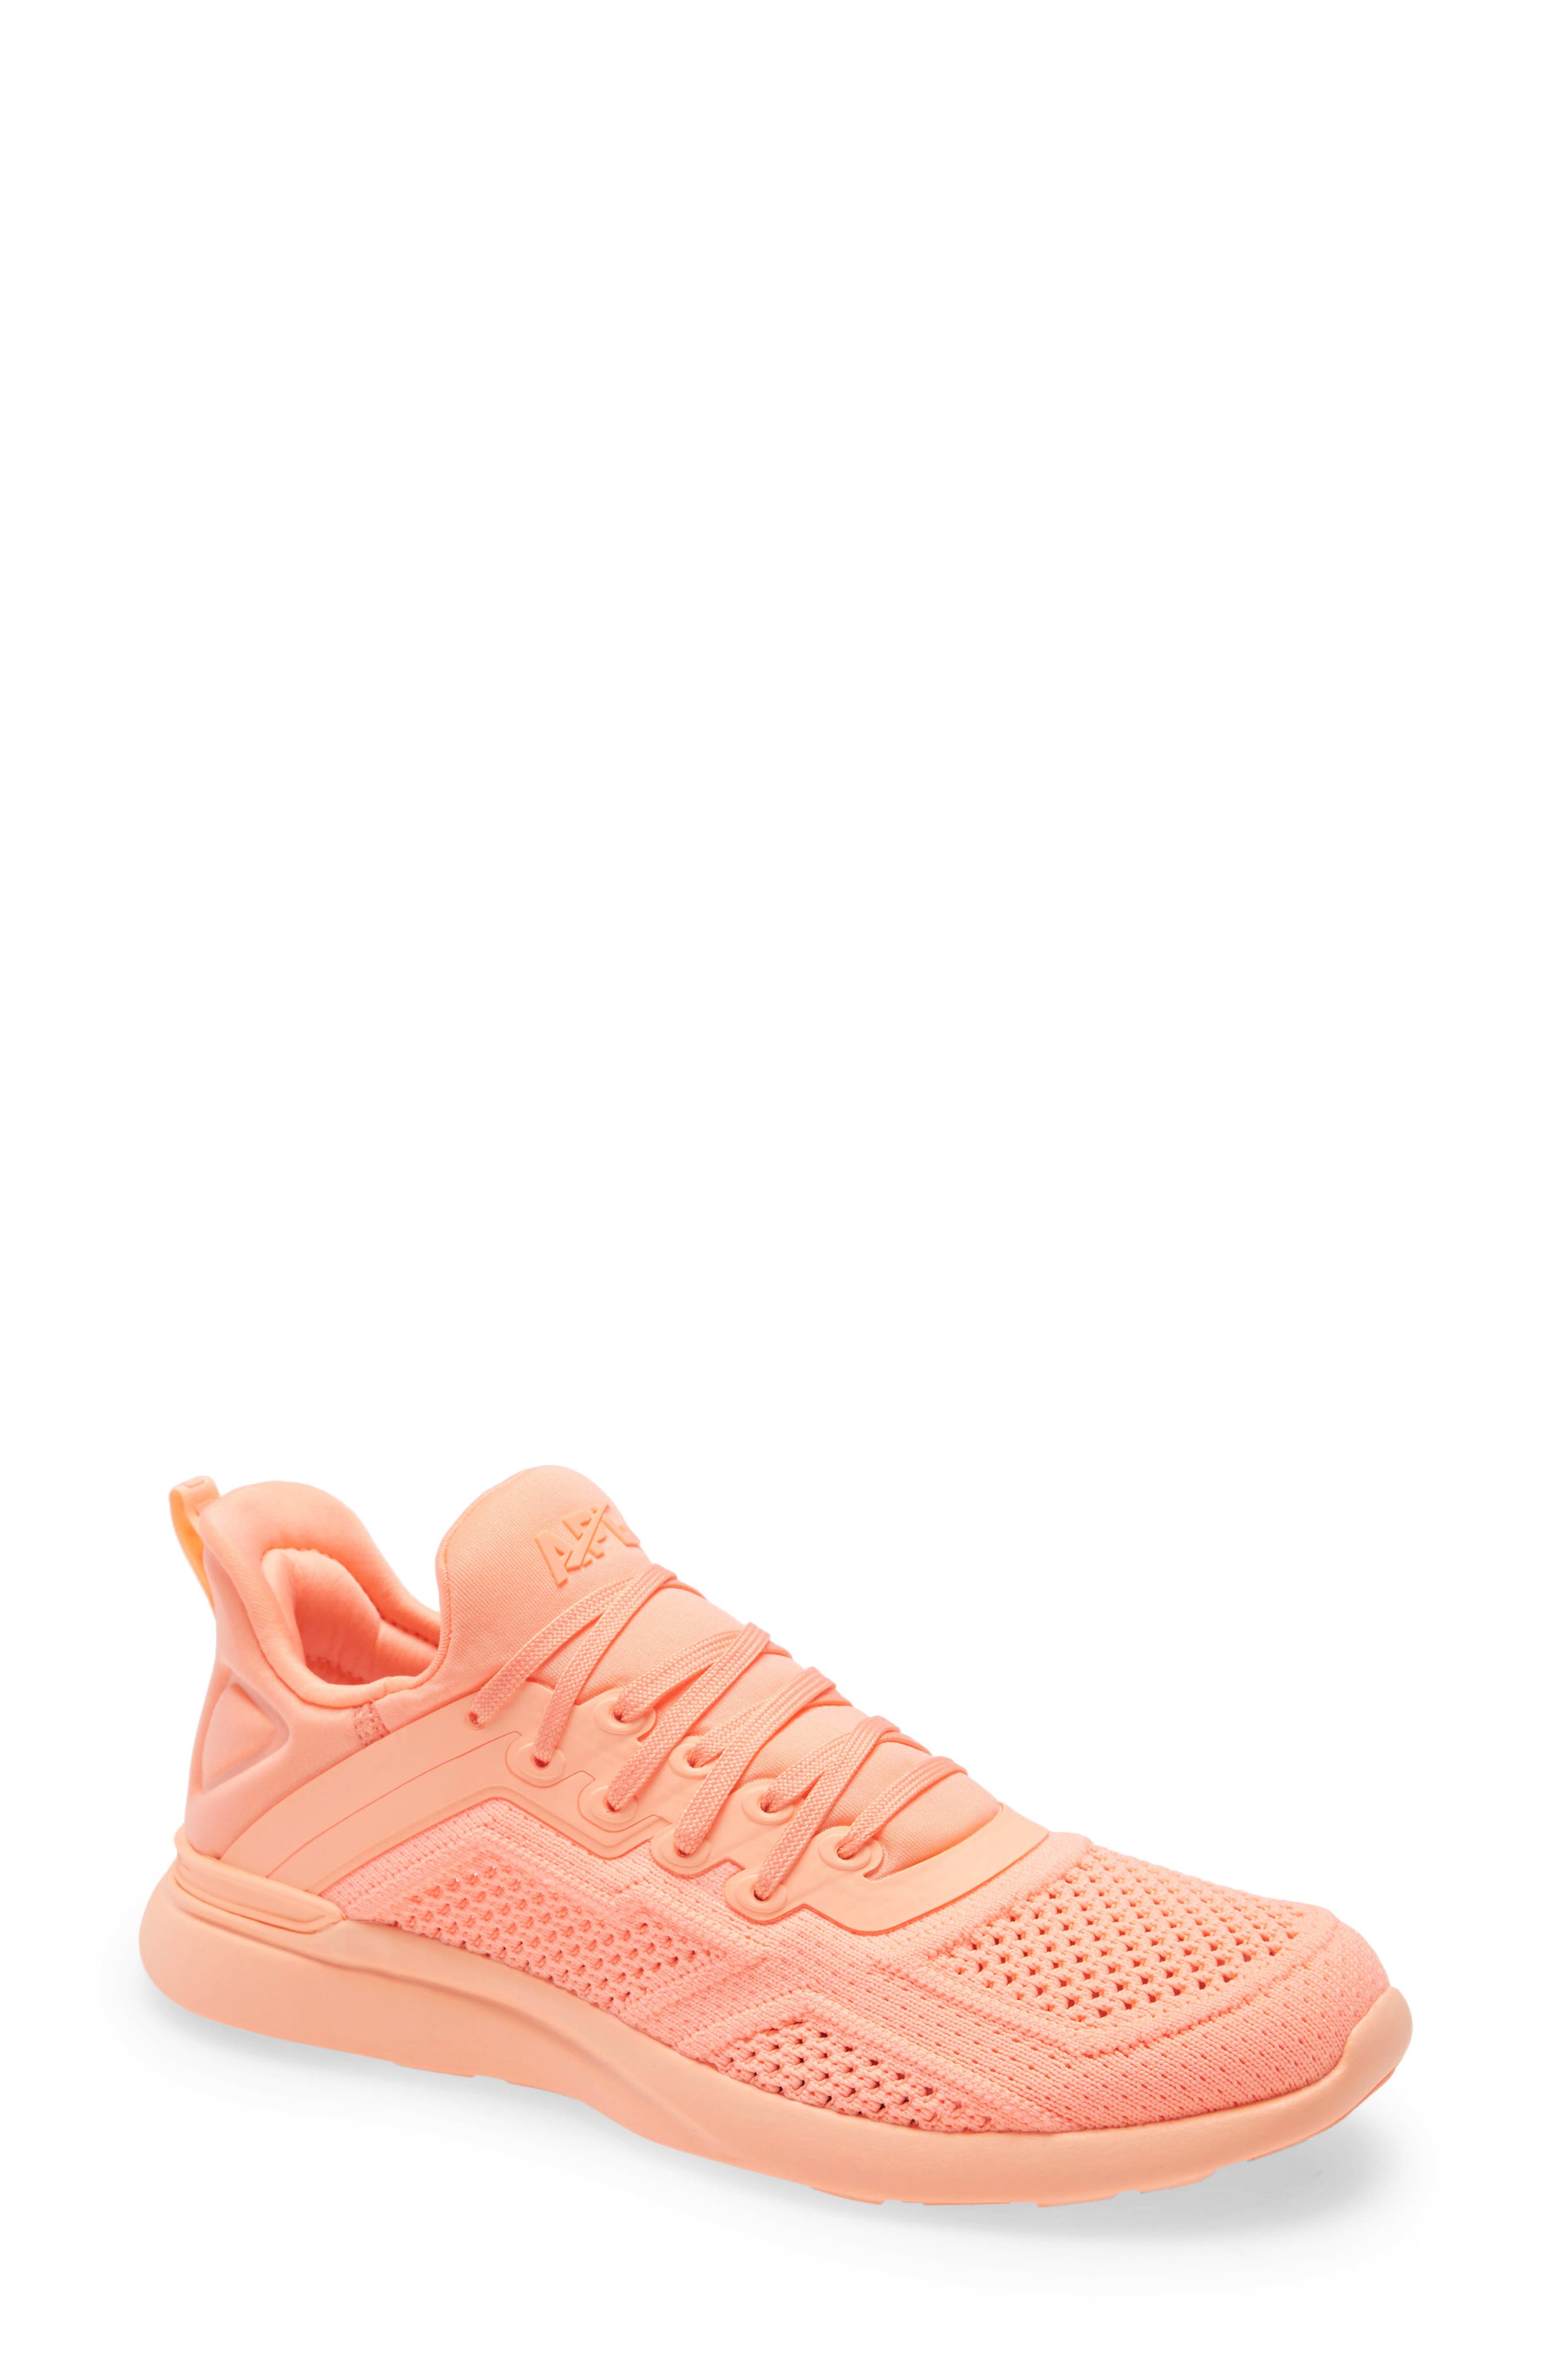 peach color shoes